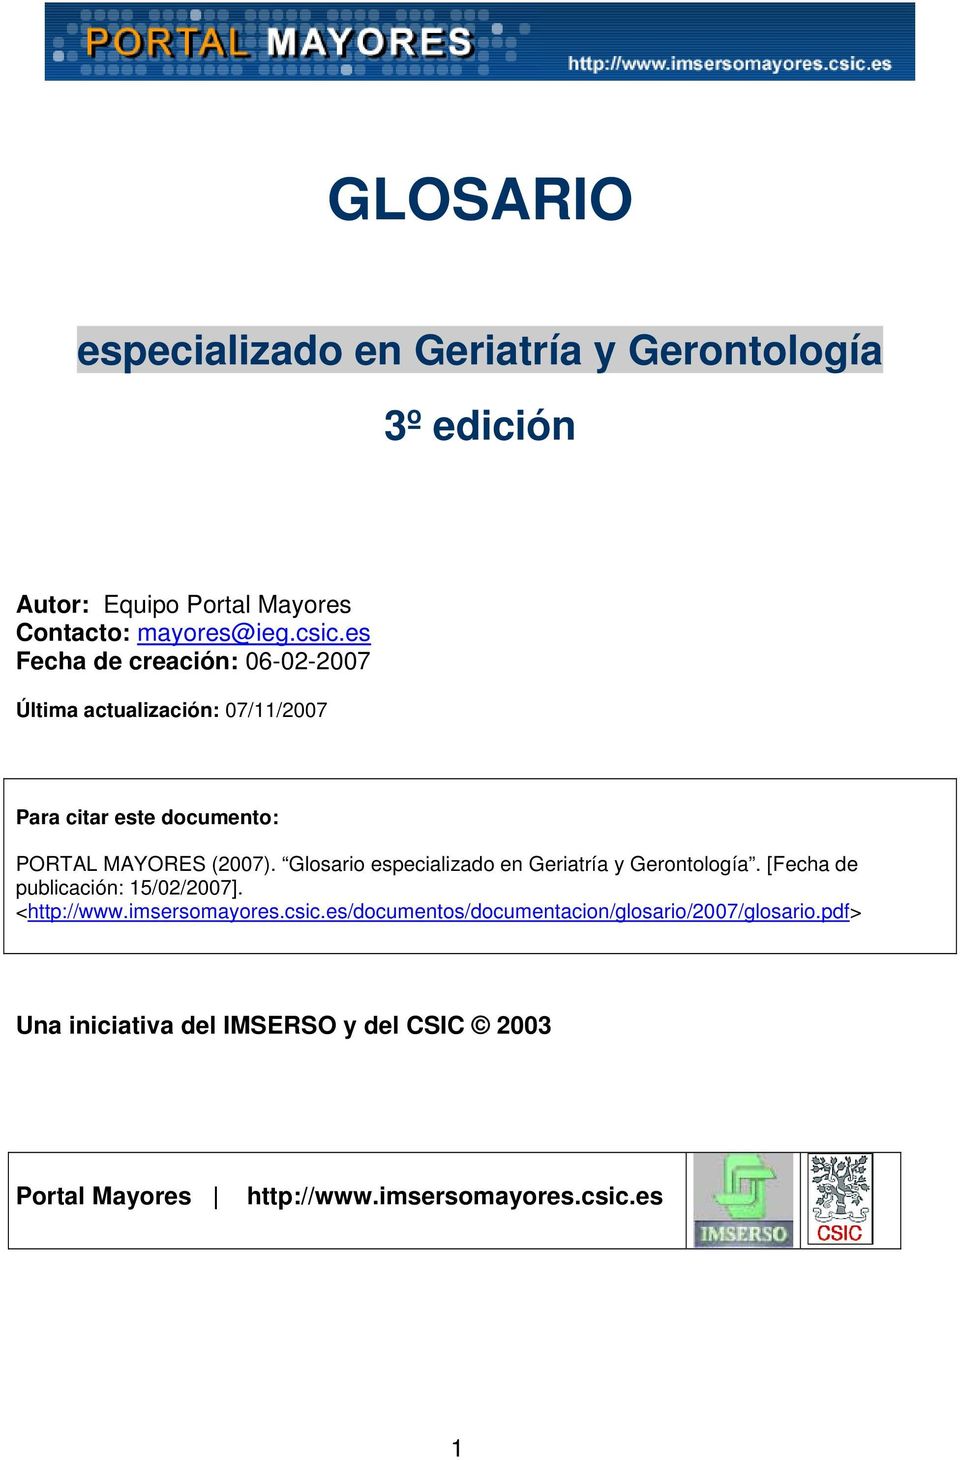 Glosario especializado en Geriatría y Gerontología. [Fecha de publicación: 15/02/2007]. <http://www.imsersomayores.csic.